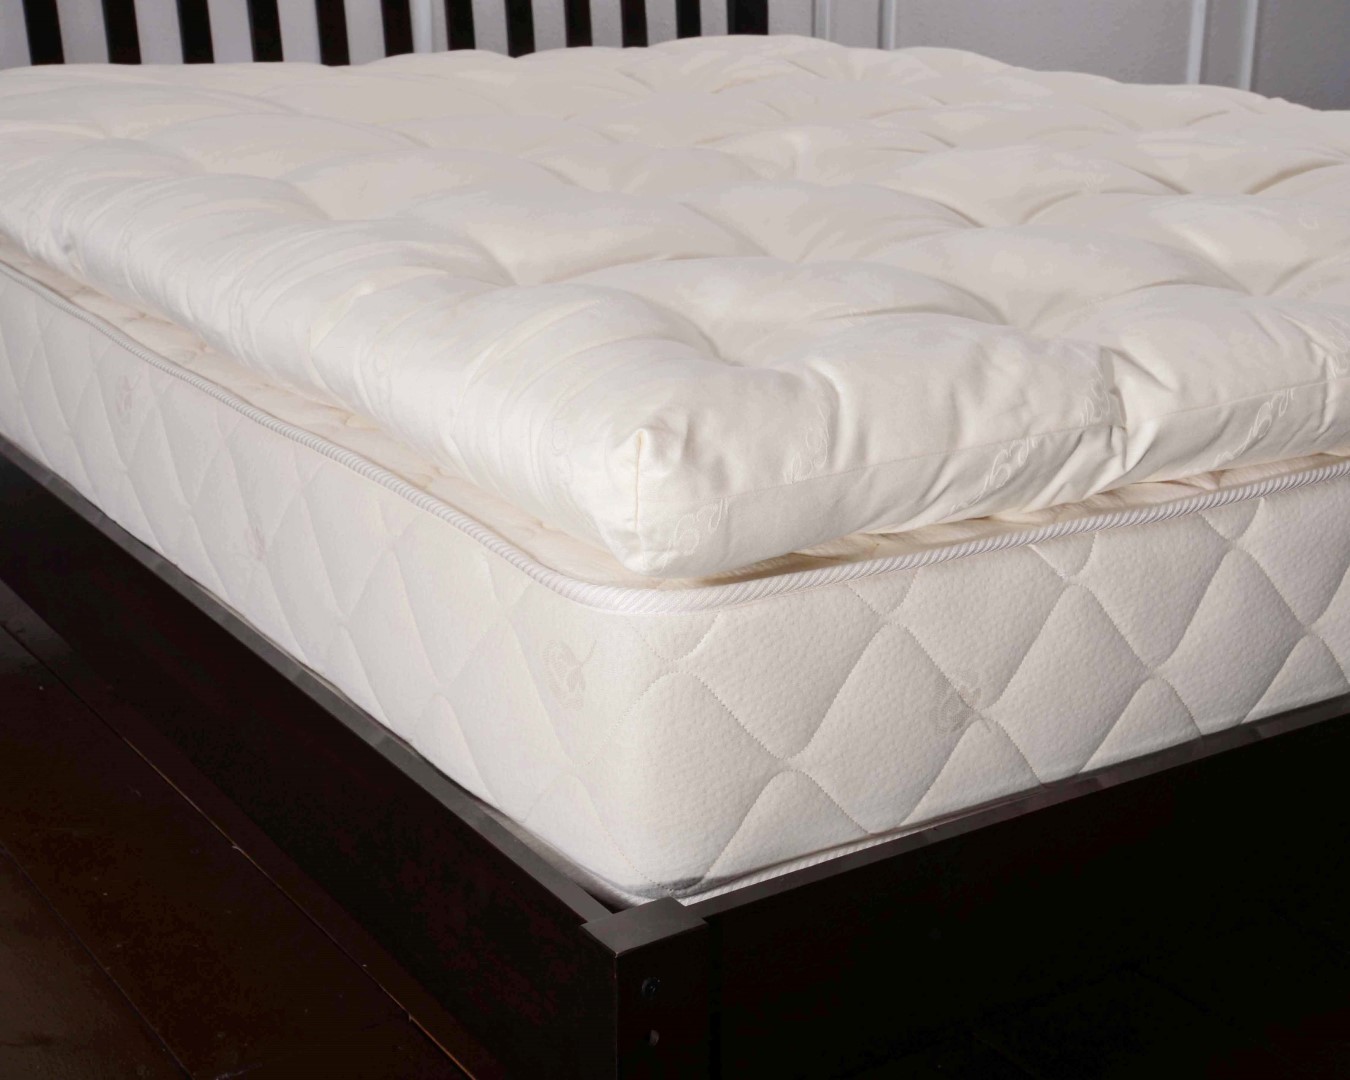 3-inch wool mattress topper